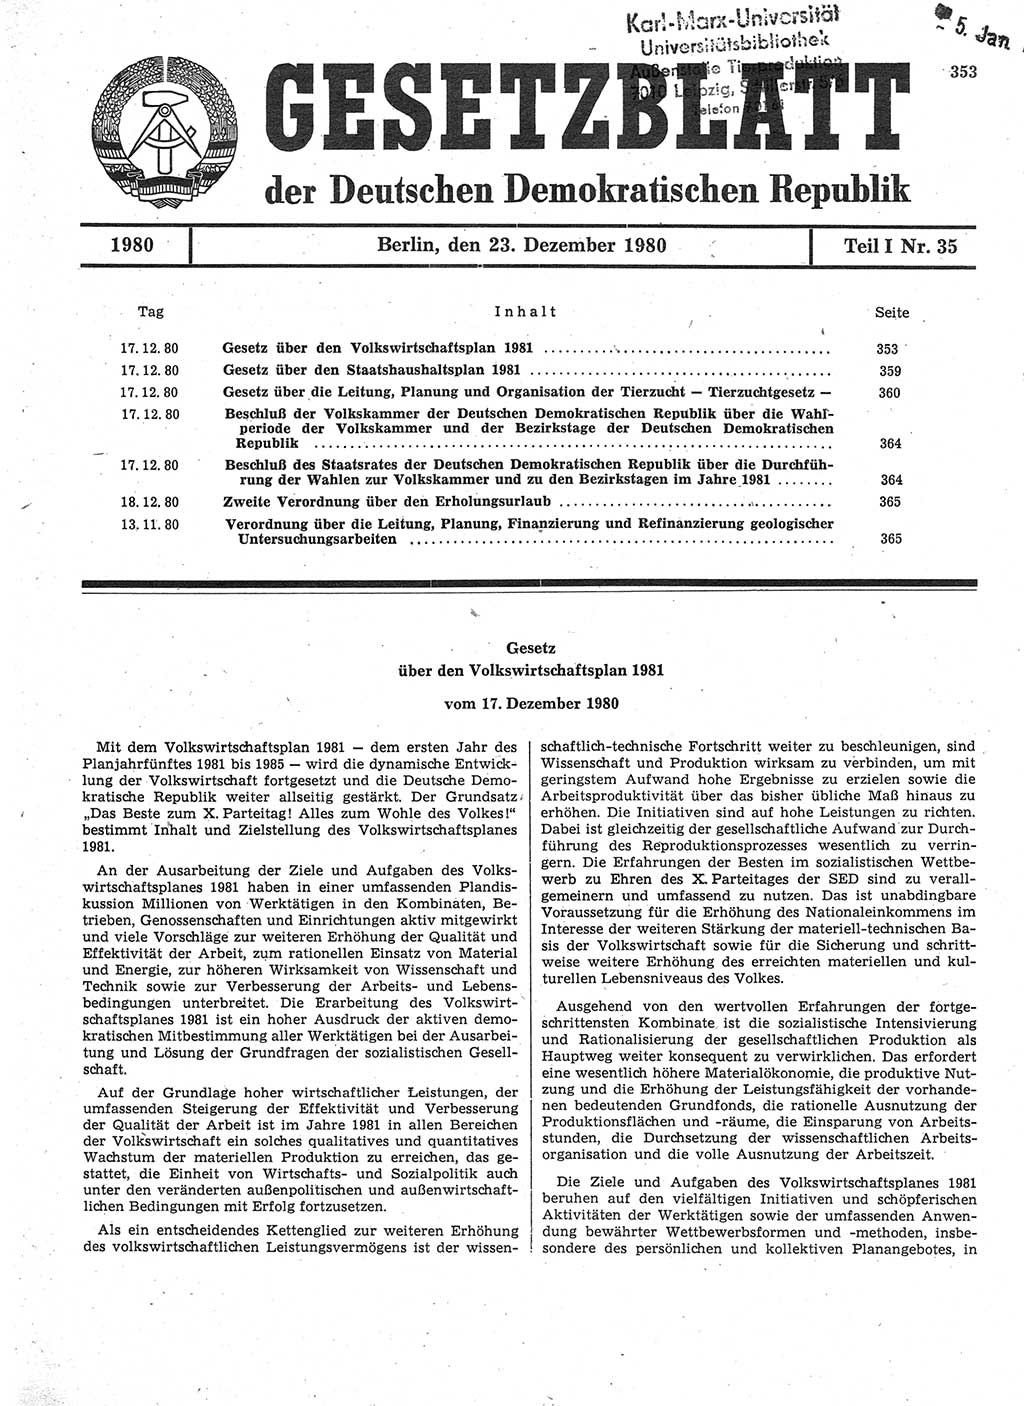 Gesetzblatt (GBl.) der Deutschen Demokratischen Republik (DDR) Teil Ⅰ 1980, Seite 353 (GBl. DDR Ⅰ 1980, S. 353)